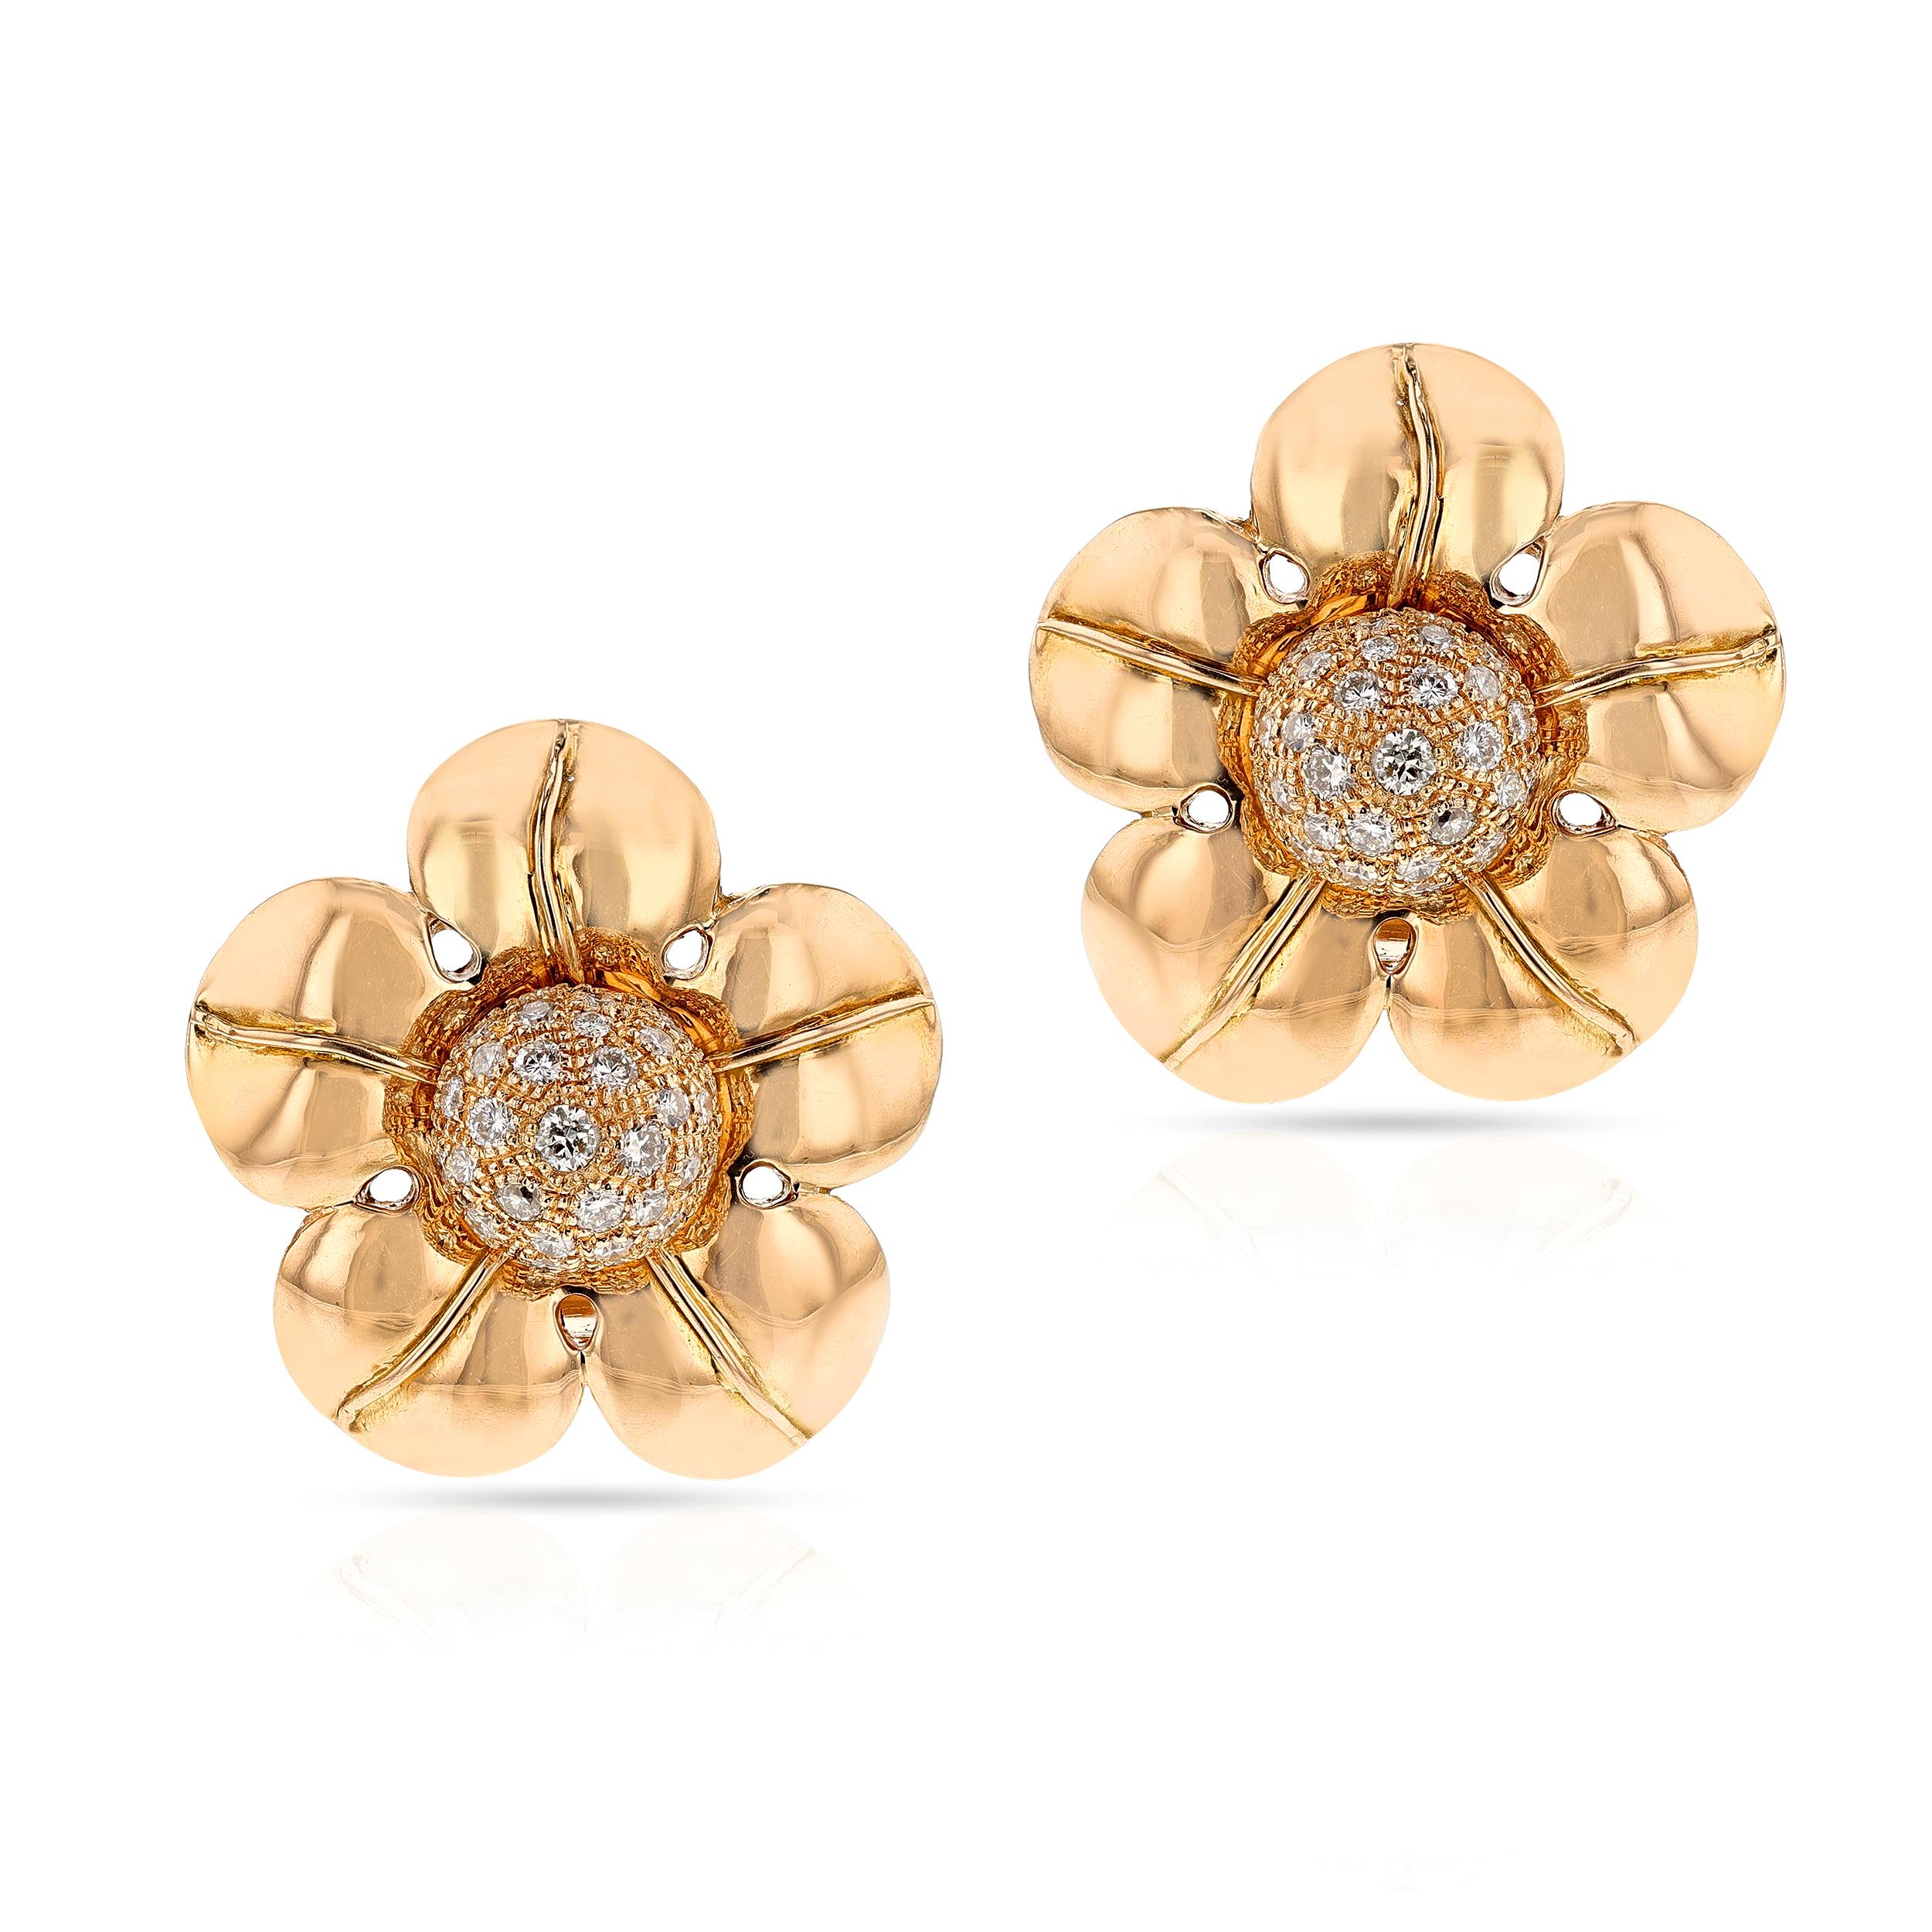 Un raro paio di orecchini floreali Van Cleef & Arpels realizzati da Pery et Fils Floral  con oro e diamanti a 18 carati. Firmato e numerato. La lunghezza è di 1,25 pollici di diametro con circa 3 carati di diamanti di colore D-E-F e purezza VS, per